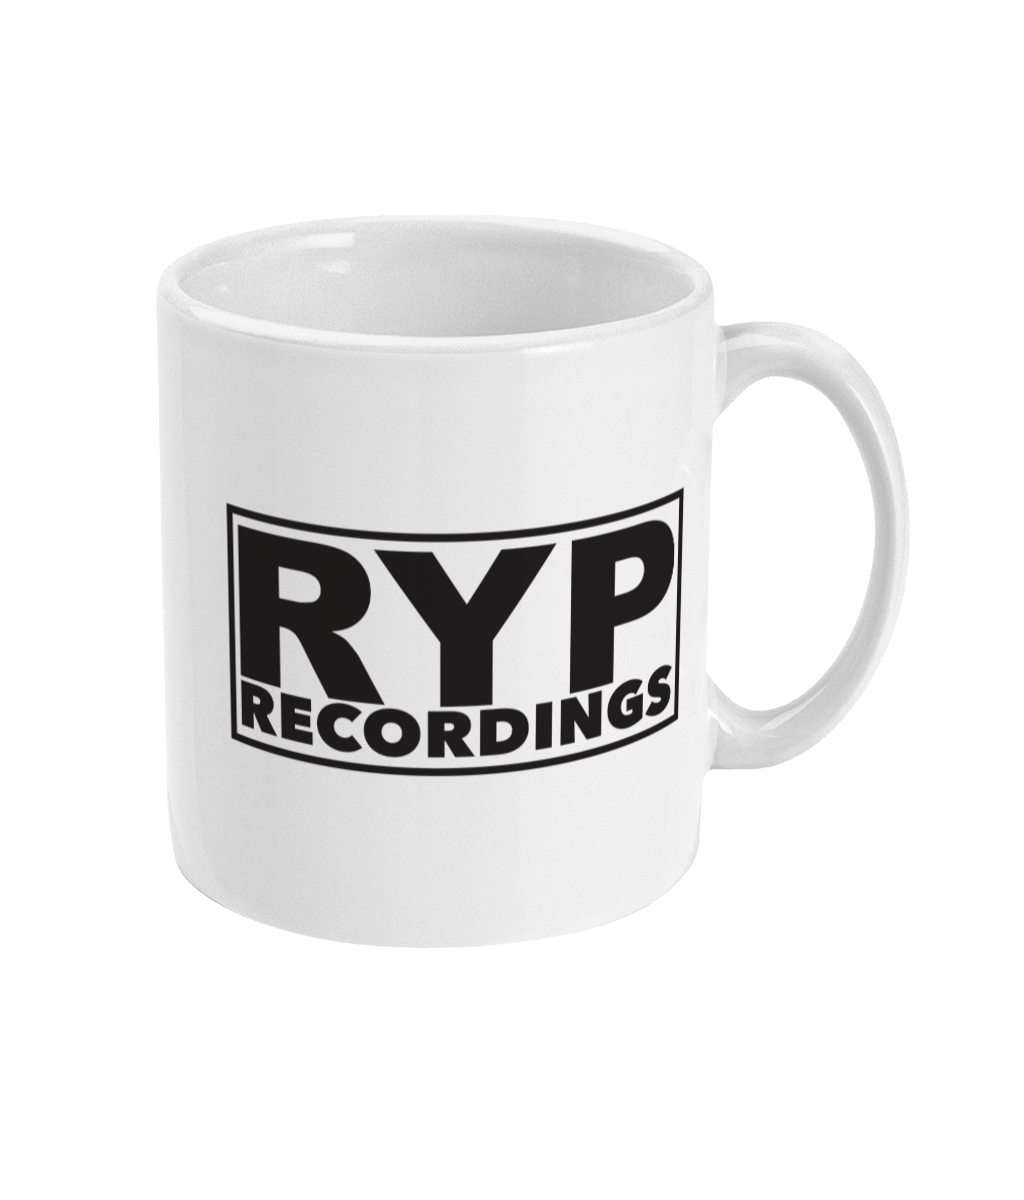 RYP Recordings Mug, 11oz